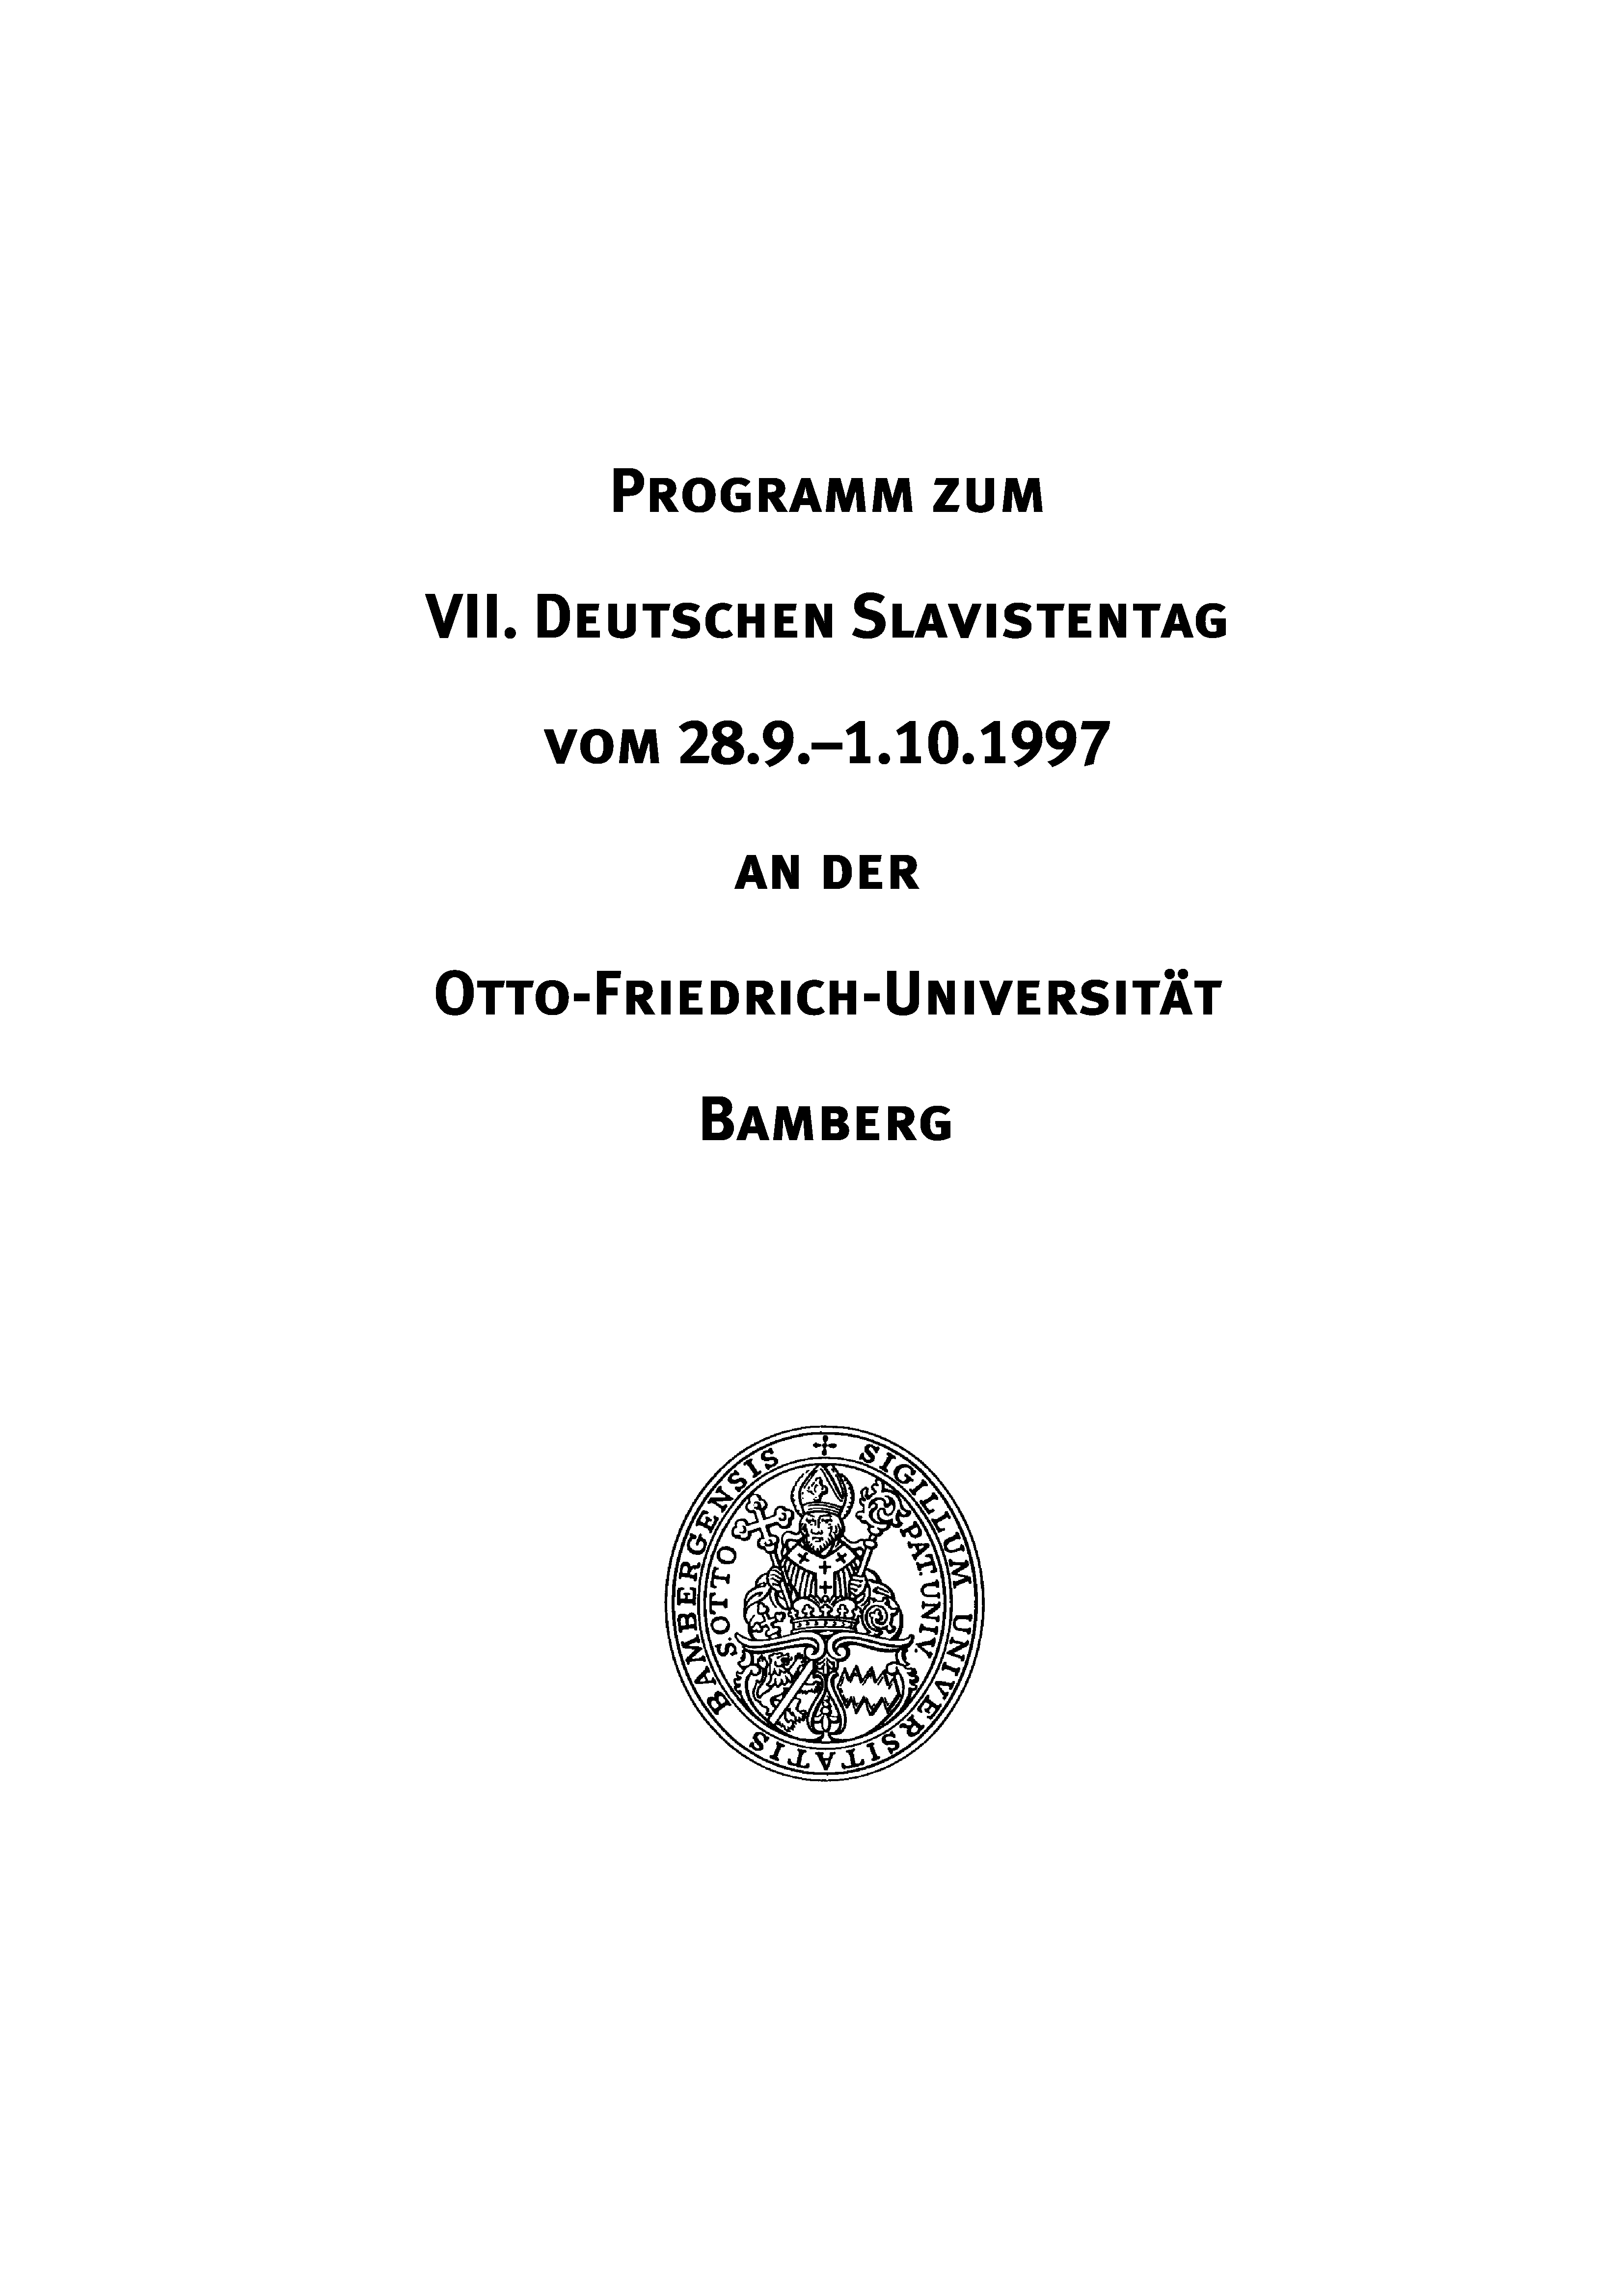 Programm zum VII. Deutschen Slavistentag in Bamberg 1997